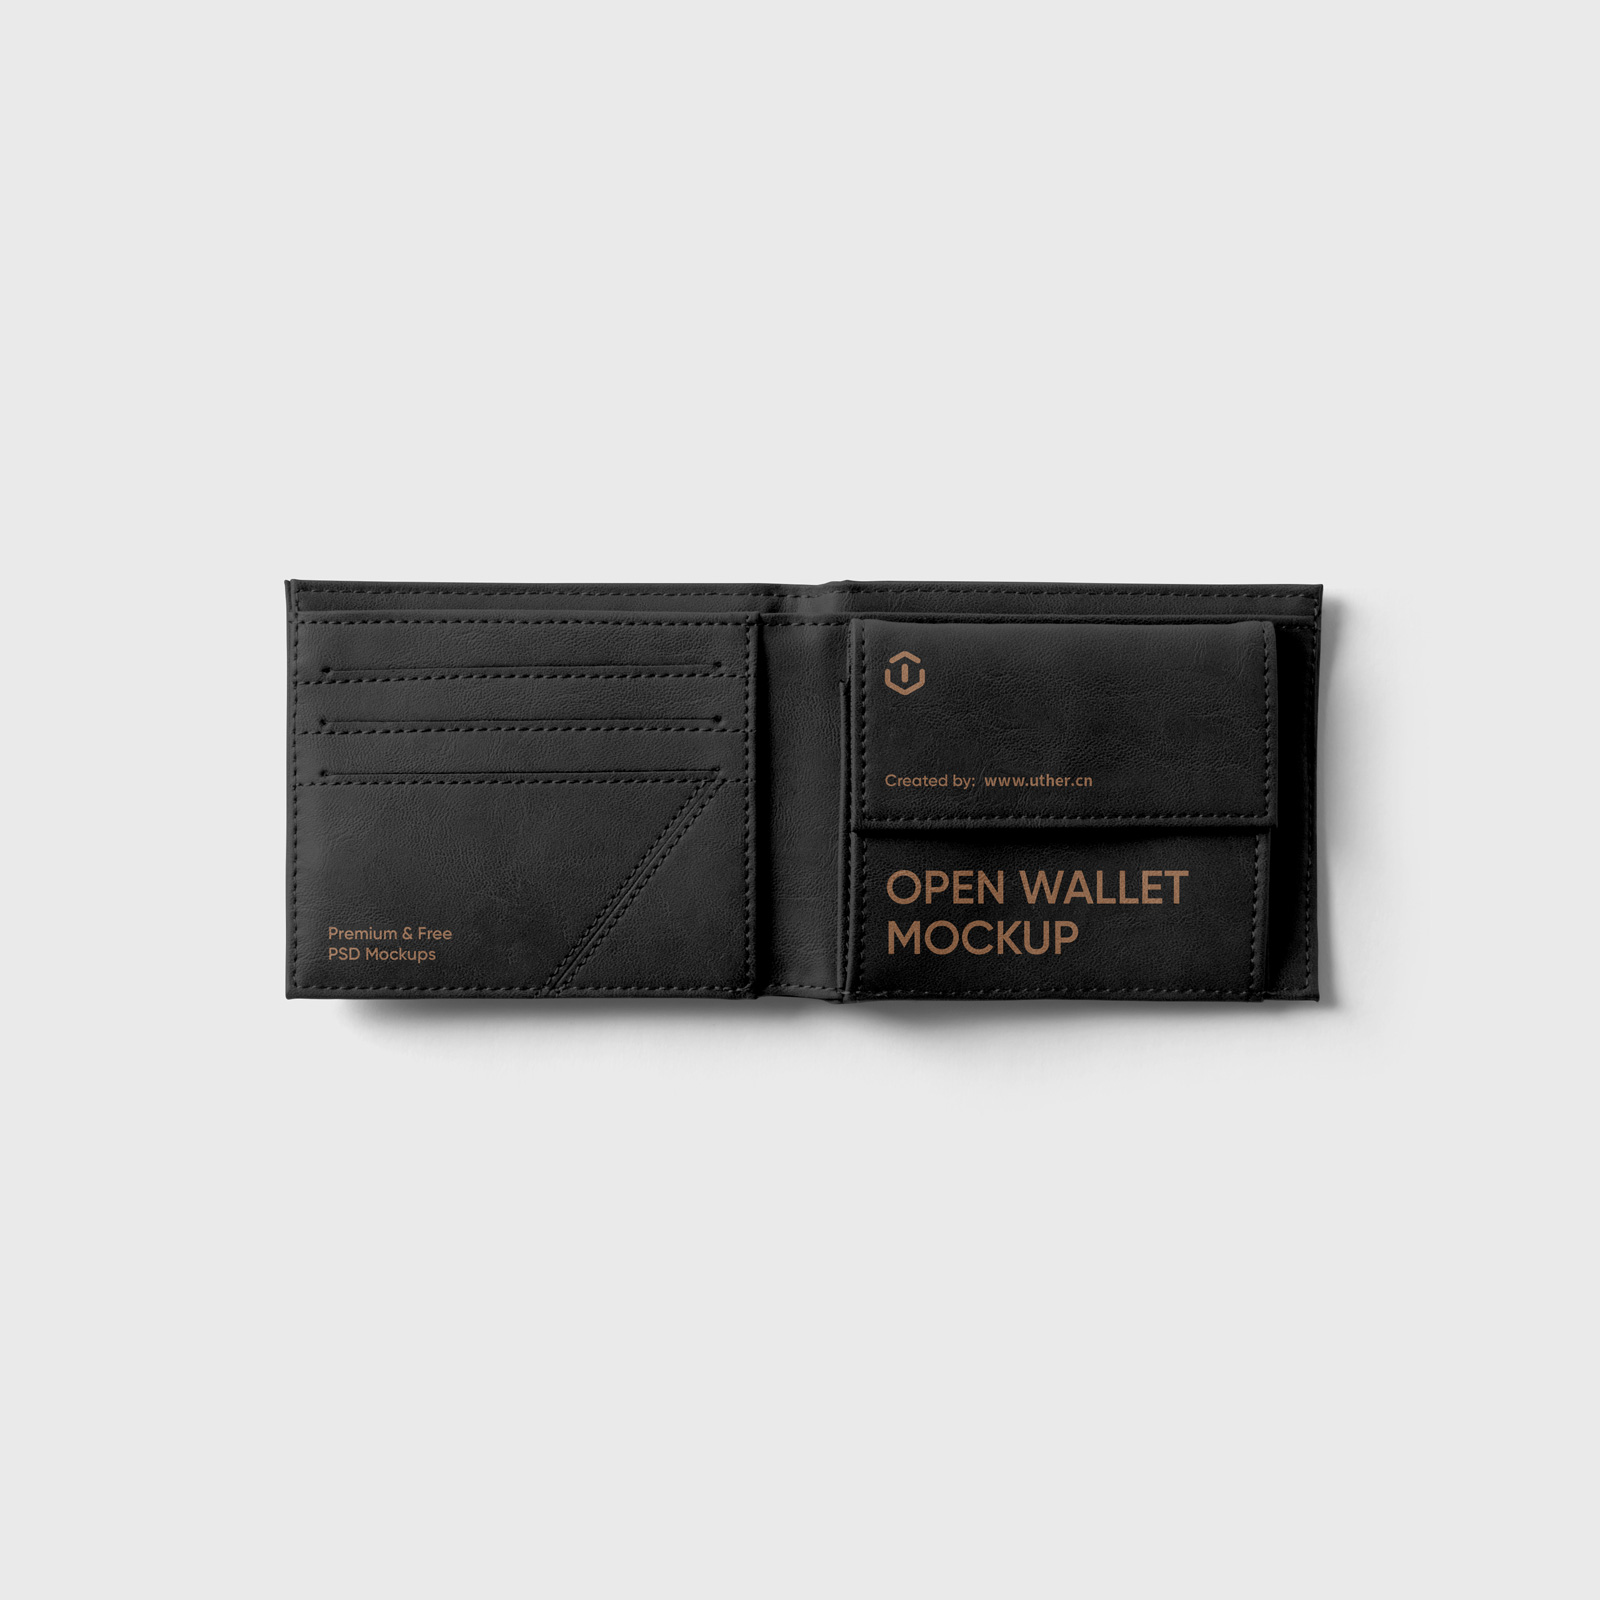 打开的黑色皮夹钱包样机模型Open Wallet Mockup .psd素材